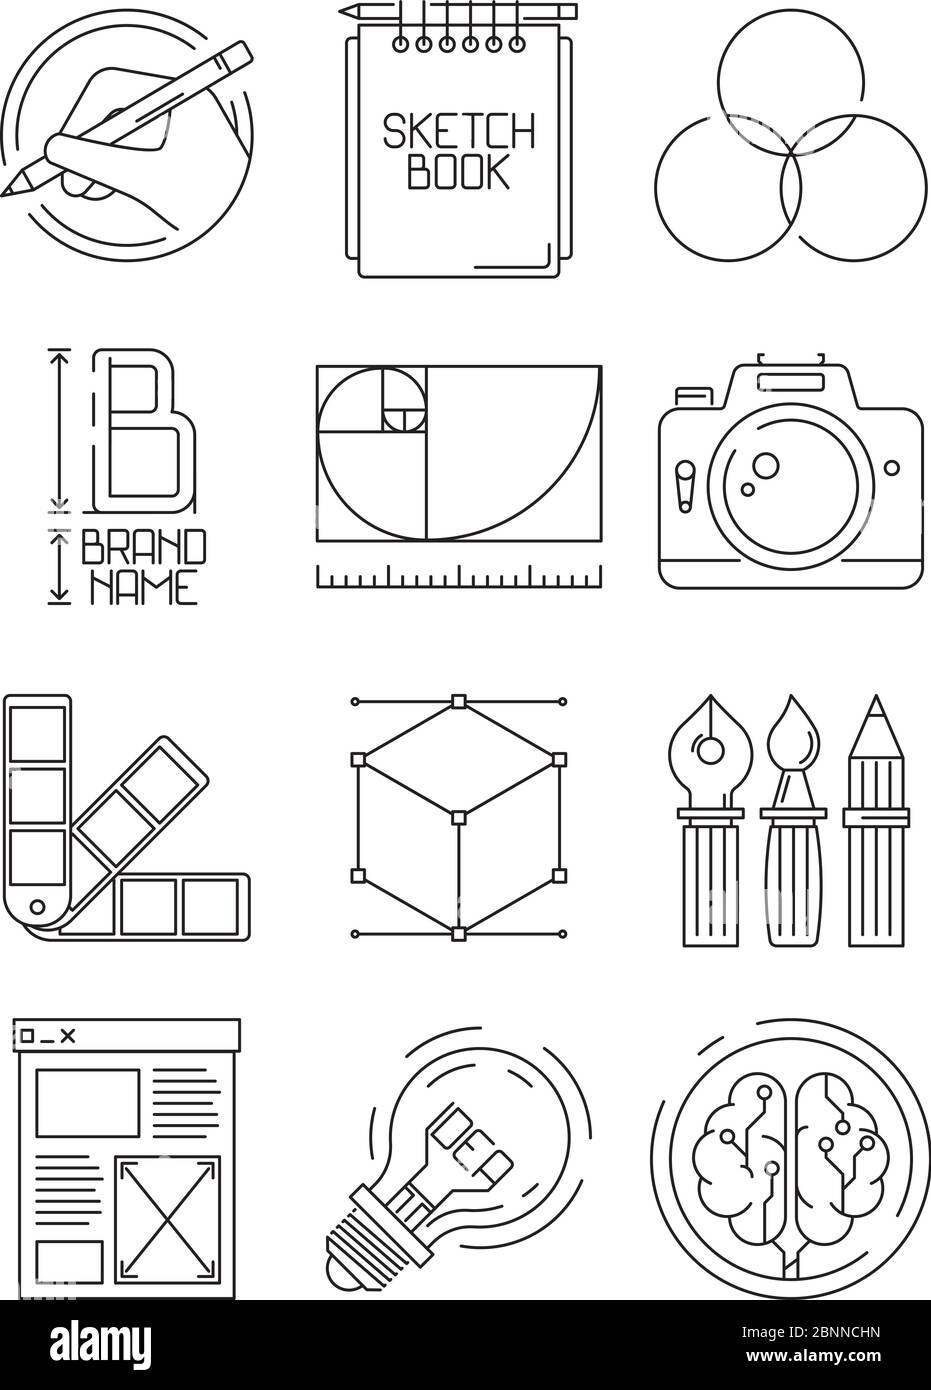 Icone di processo creativo. Disegno di schizzo marcare a caldo blogging simboli creativi grafici di artisti popoli illustrazioni vettoriali Illustrazione Vettoriale